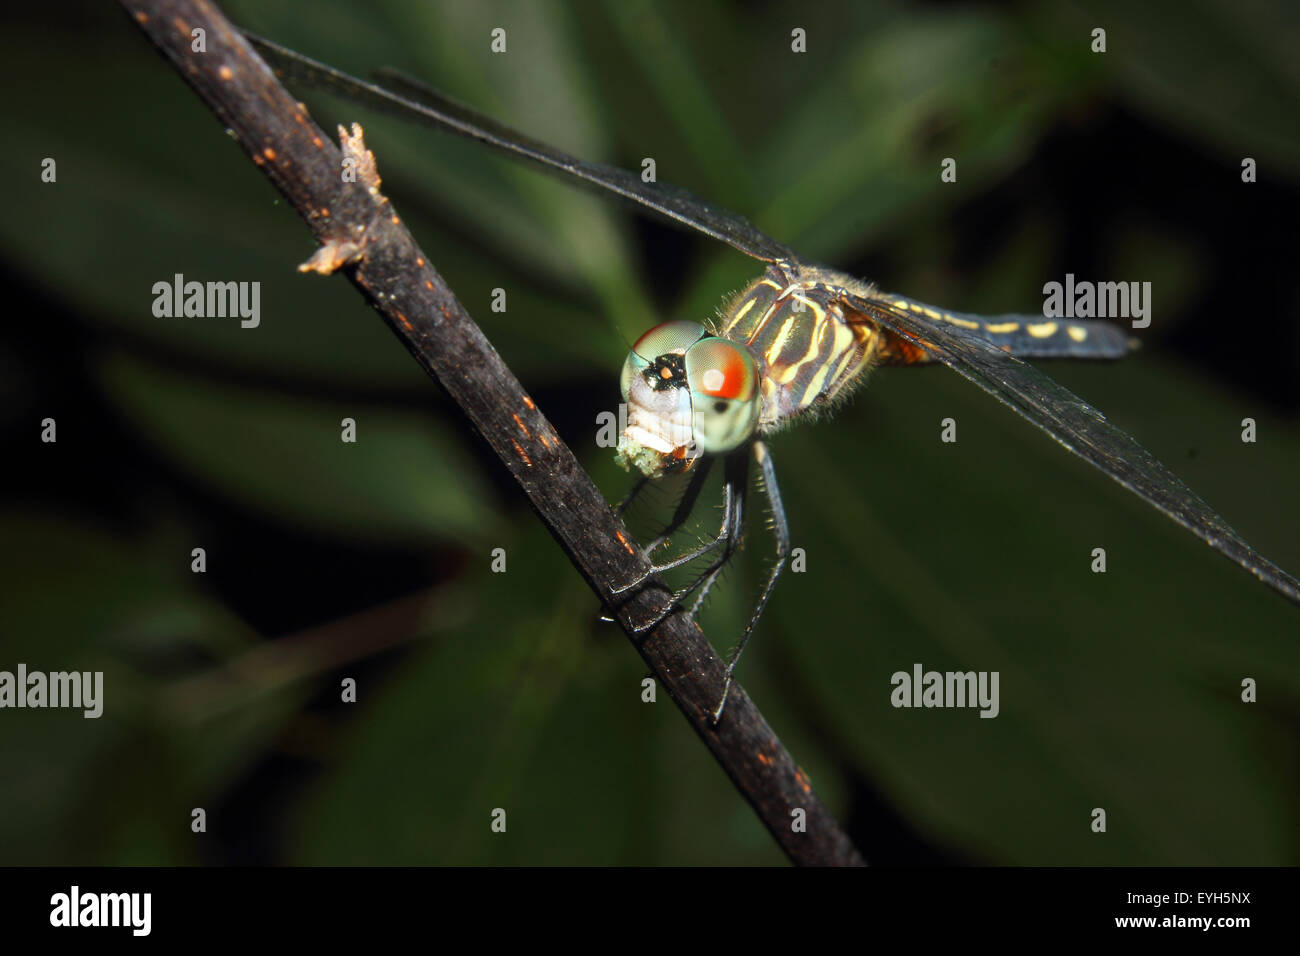 A Dragonfly on a twig feeding on a prey item. Stock Photo